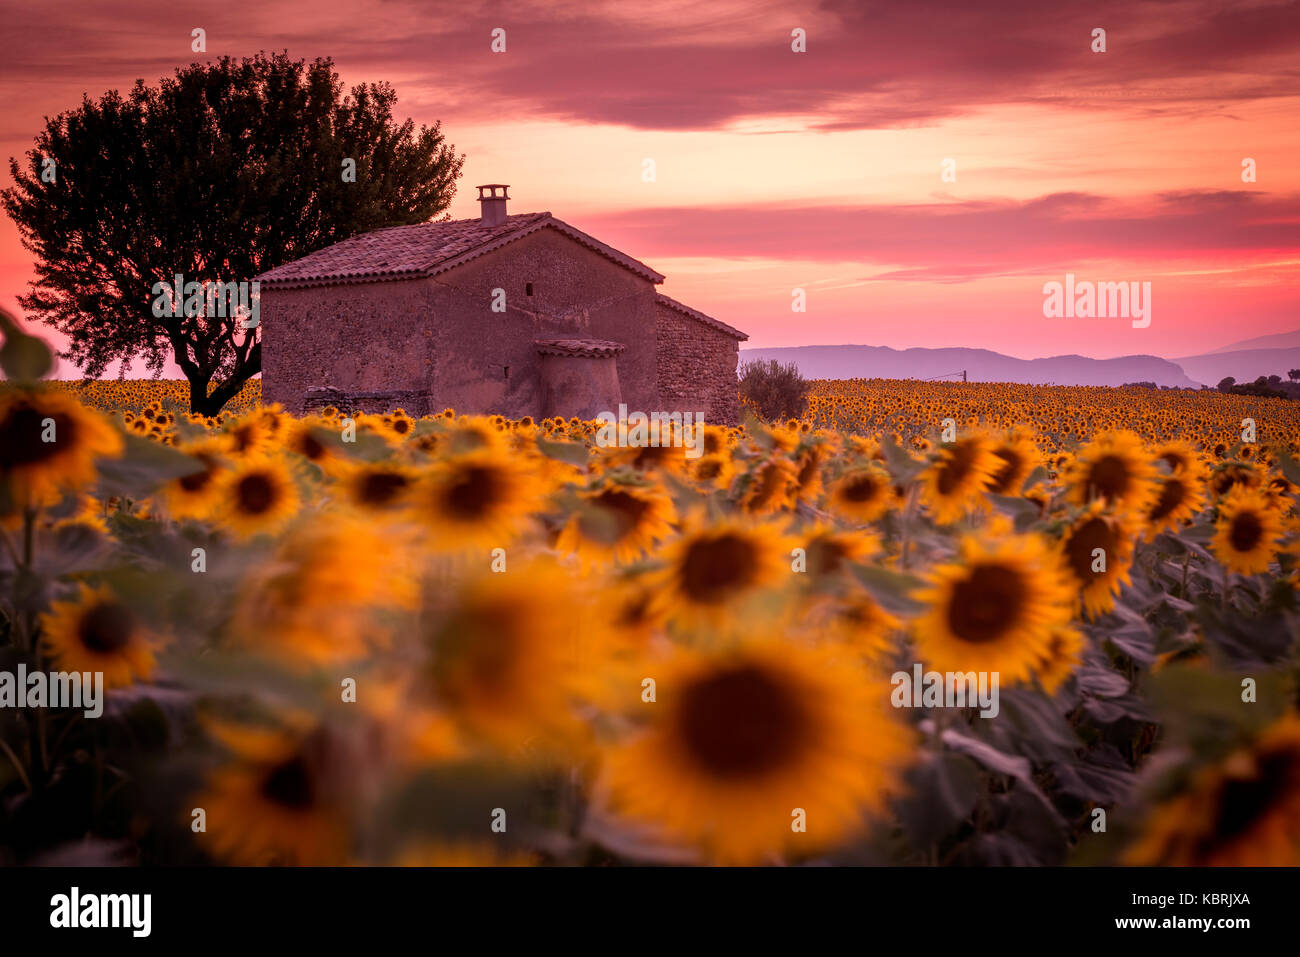 Provence, Plateau von Valensole, Frankreich, Europa. Einsames Bauernhaus in einem Feld voller Sonnenblumen, einsamer Baum, Sonnenuntergang. Stockfoto